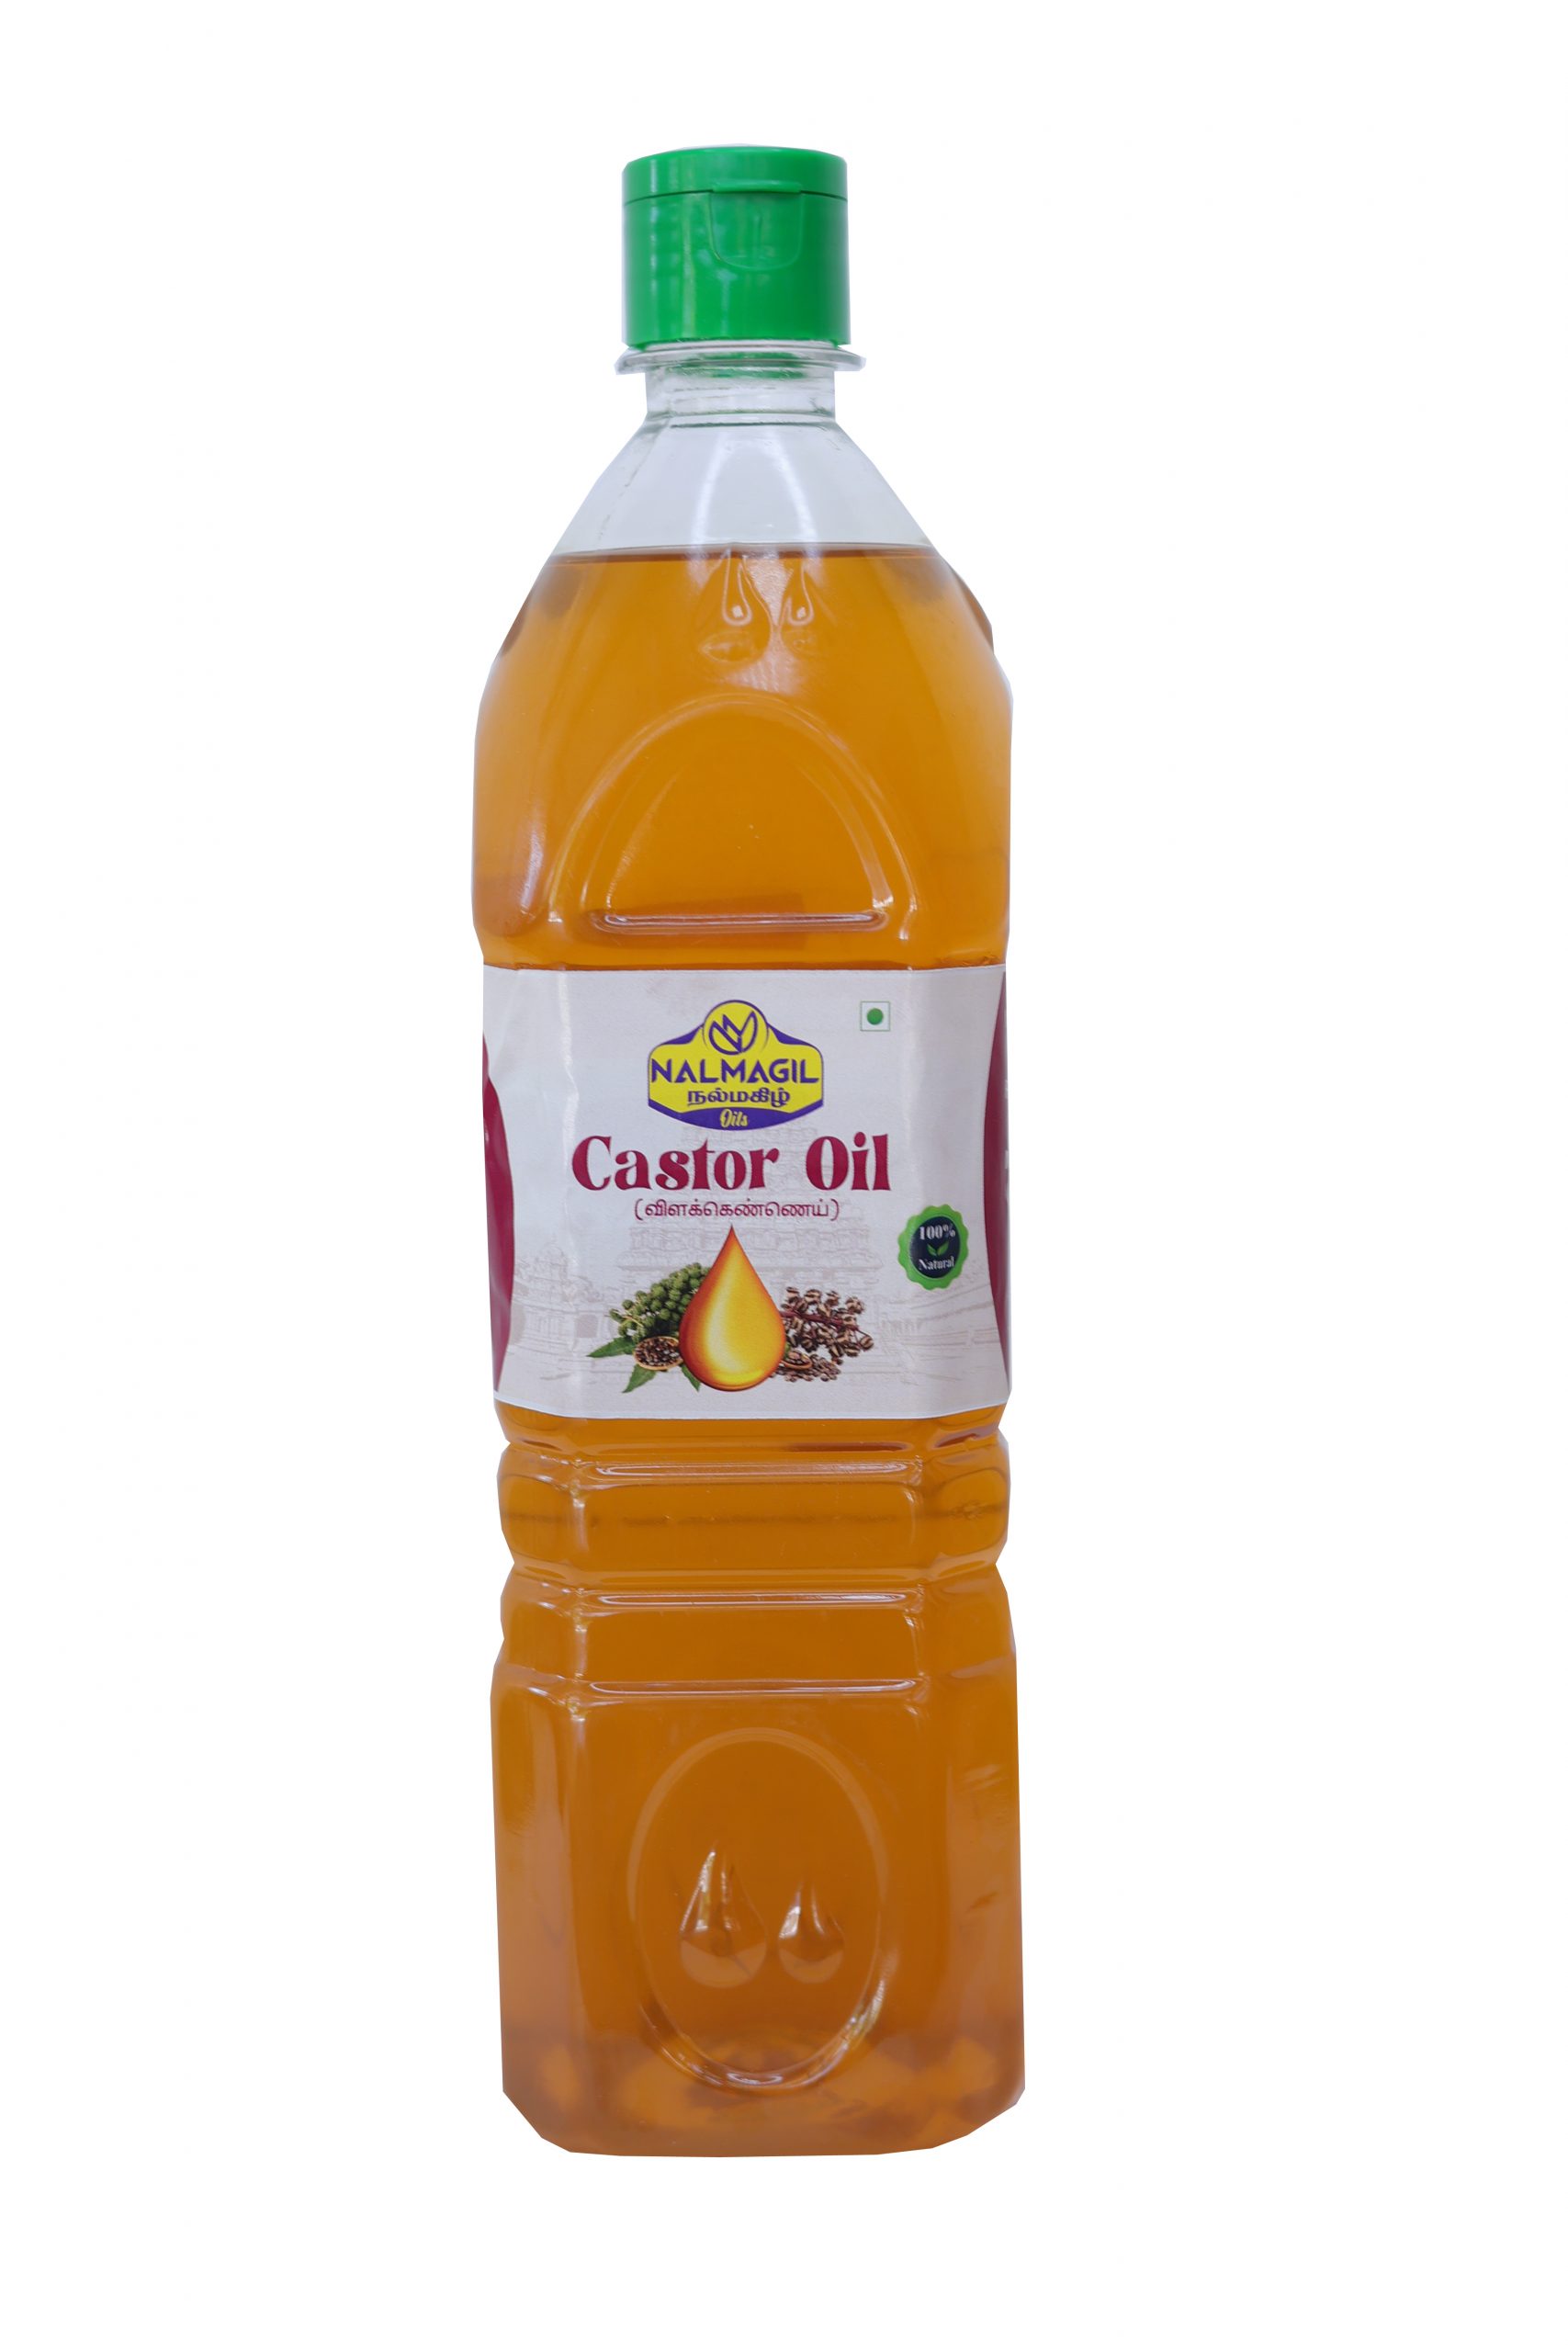 Castor Oil - Nalmagil